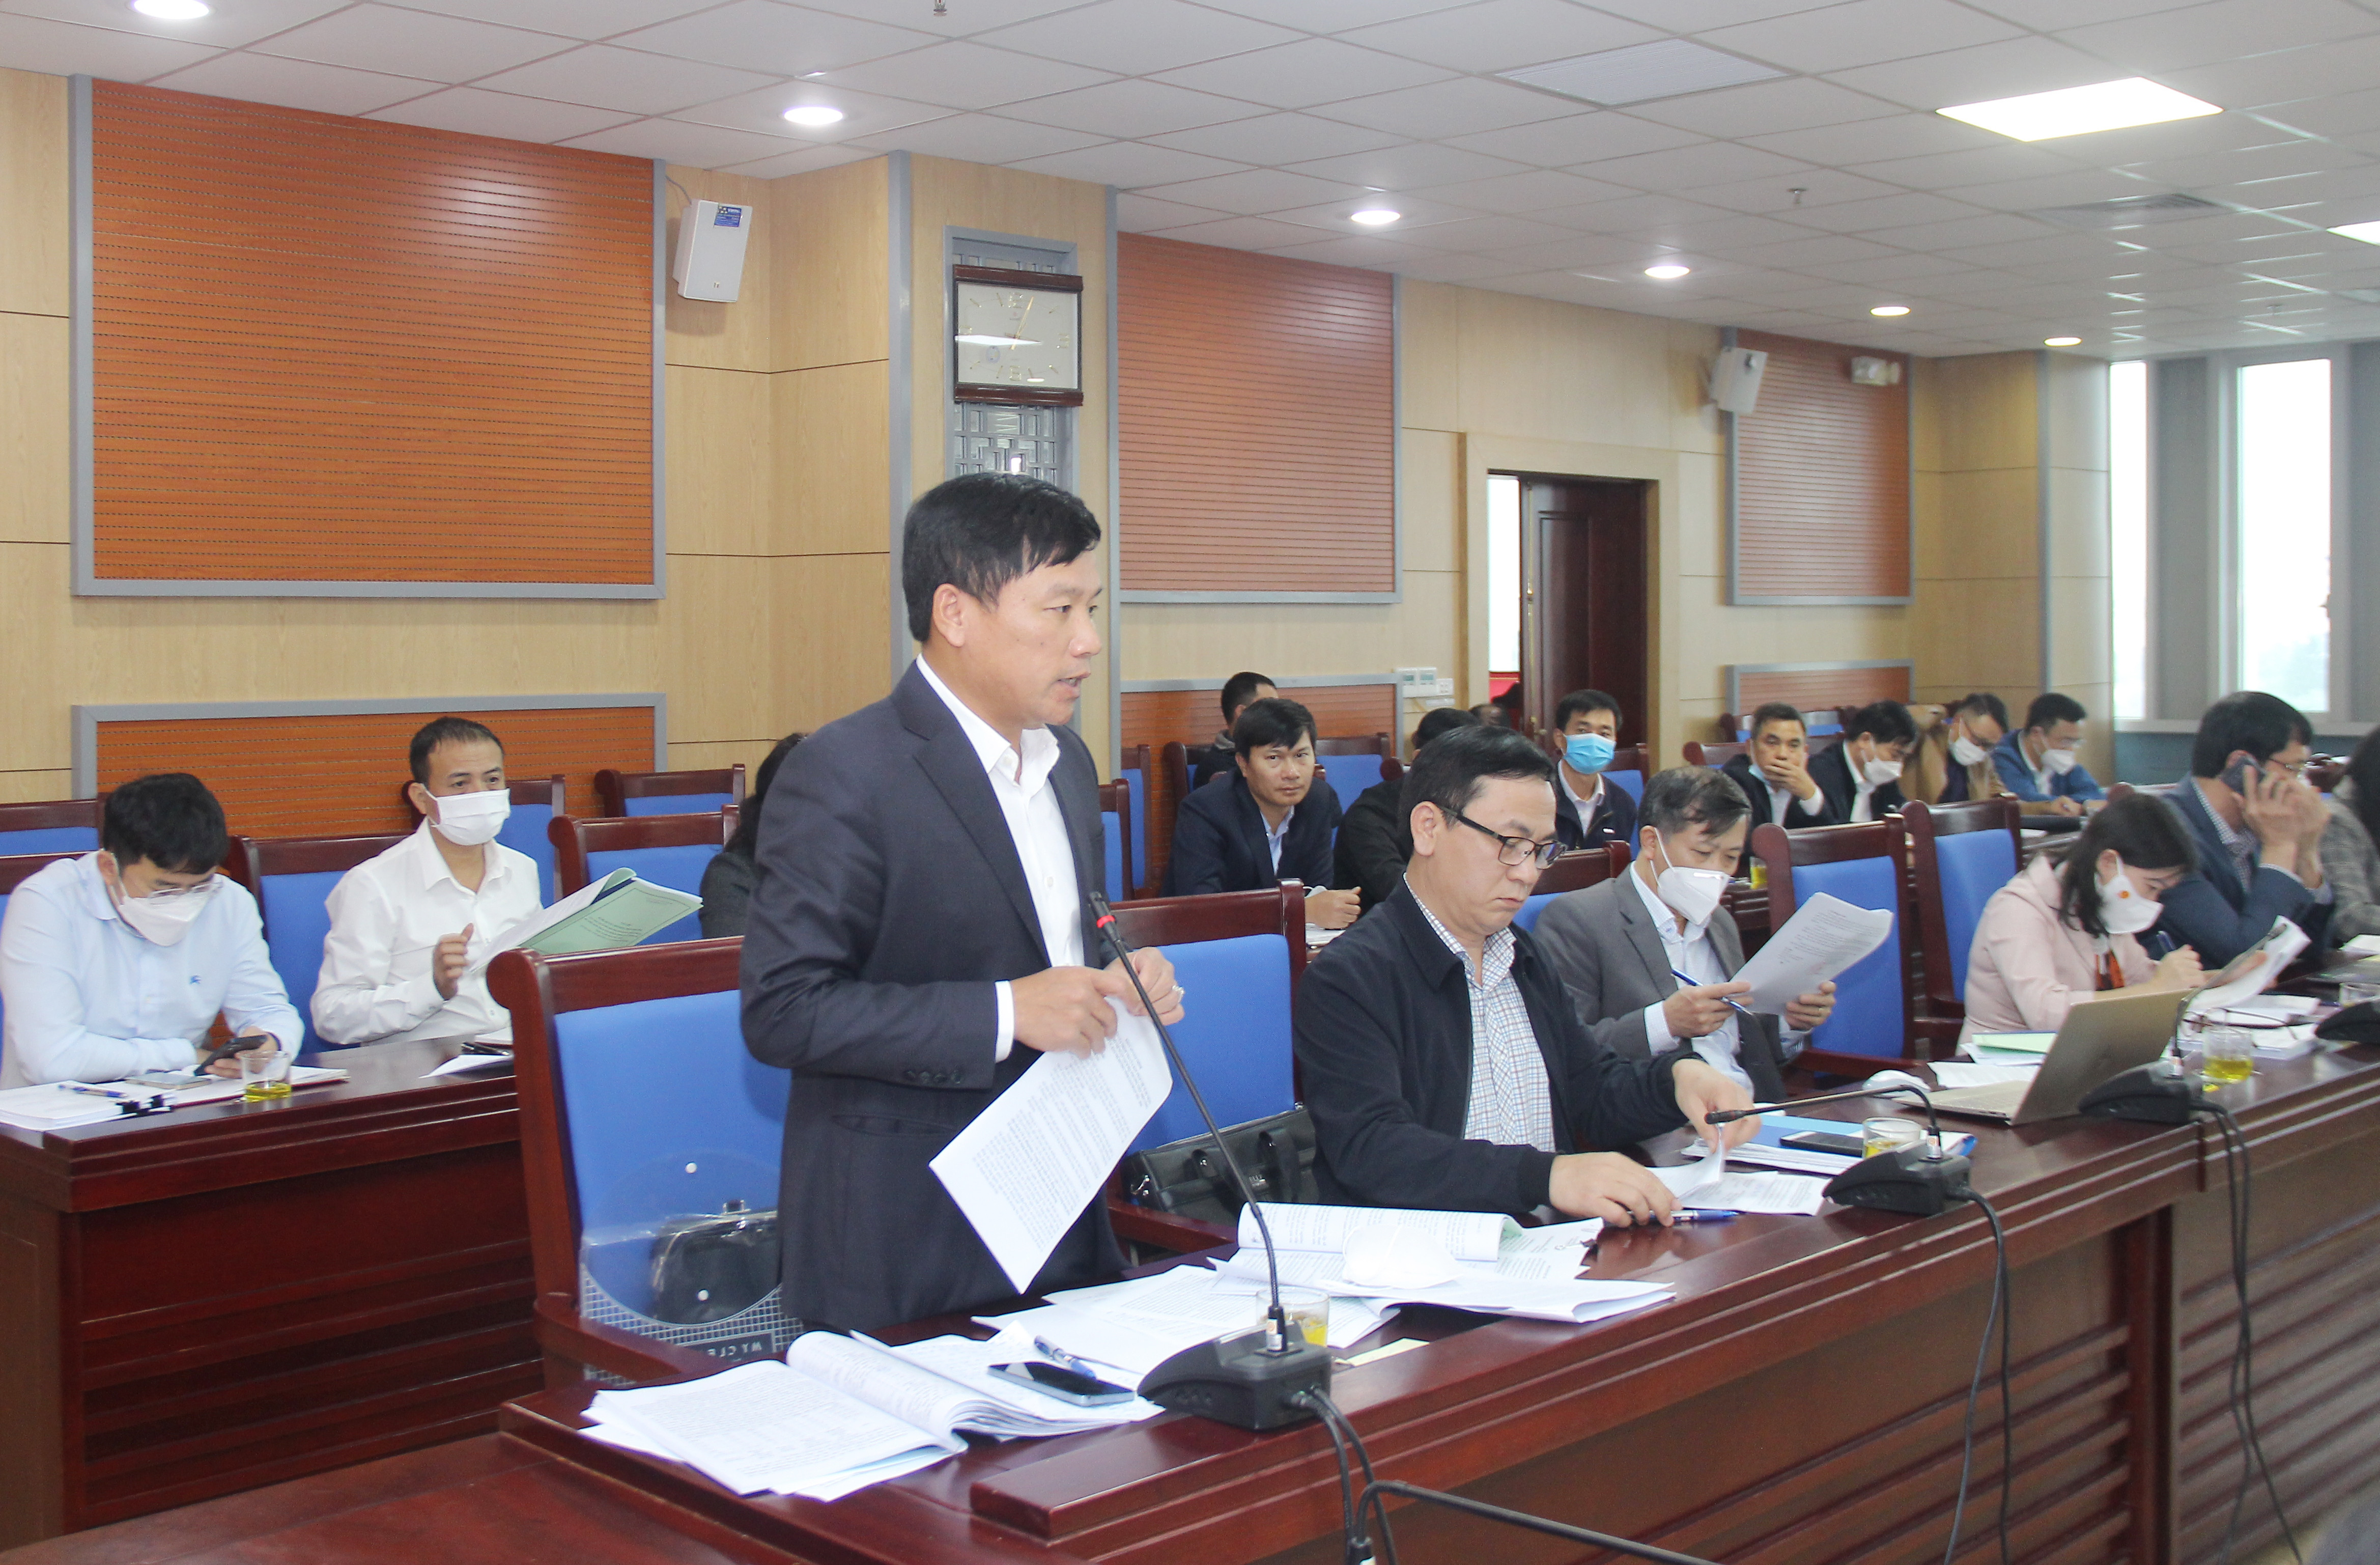 Đồng chí Hoàng Phú Hiền - Ủy viên Ban Chấp hành Đảng bộ tỉnh, Giám đốc Sở Giao thông - Vận tải tiếp thu và giải trình một số vấn đề Ban Pháp chế đặt ra.